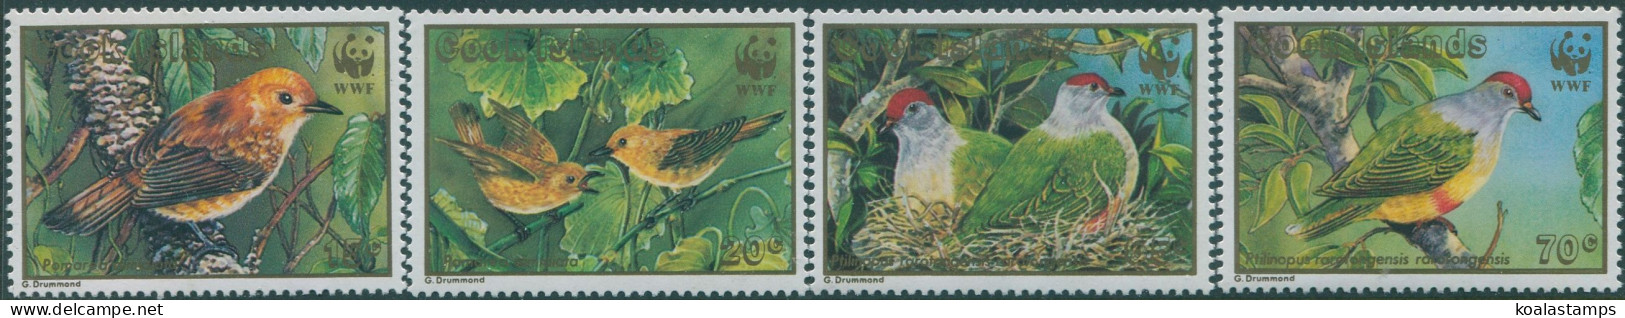 Cook Islands 1989 SG1222-1225 Endangered Birds Set MNH - Islas Cook